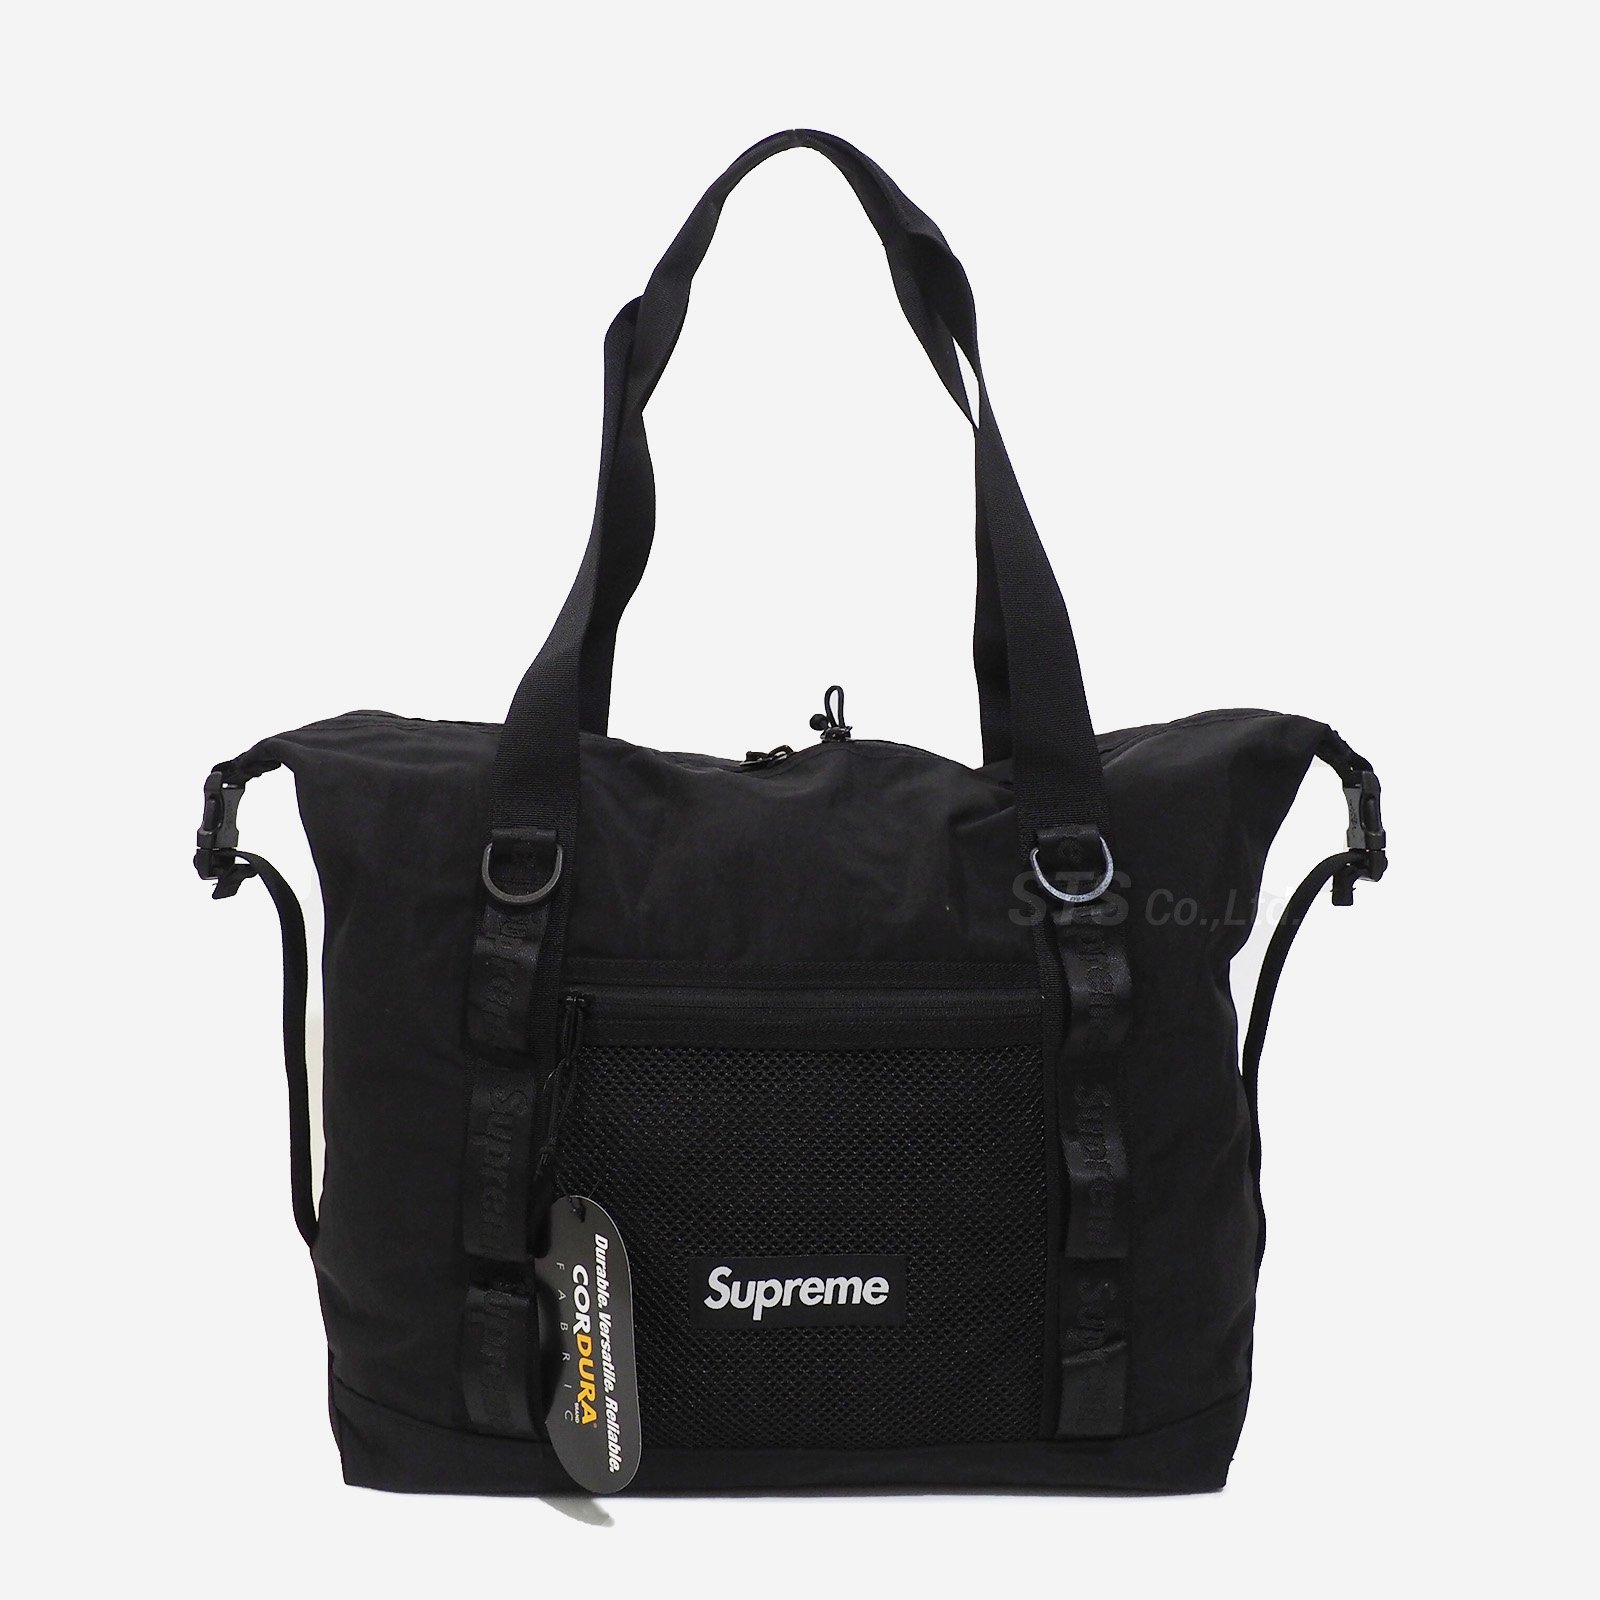 Supreme Zip Tote Bag